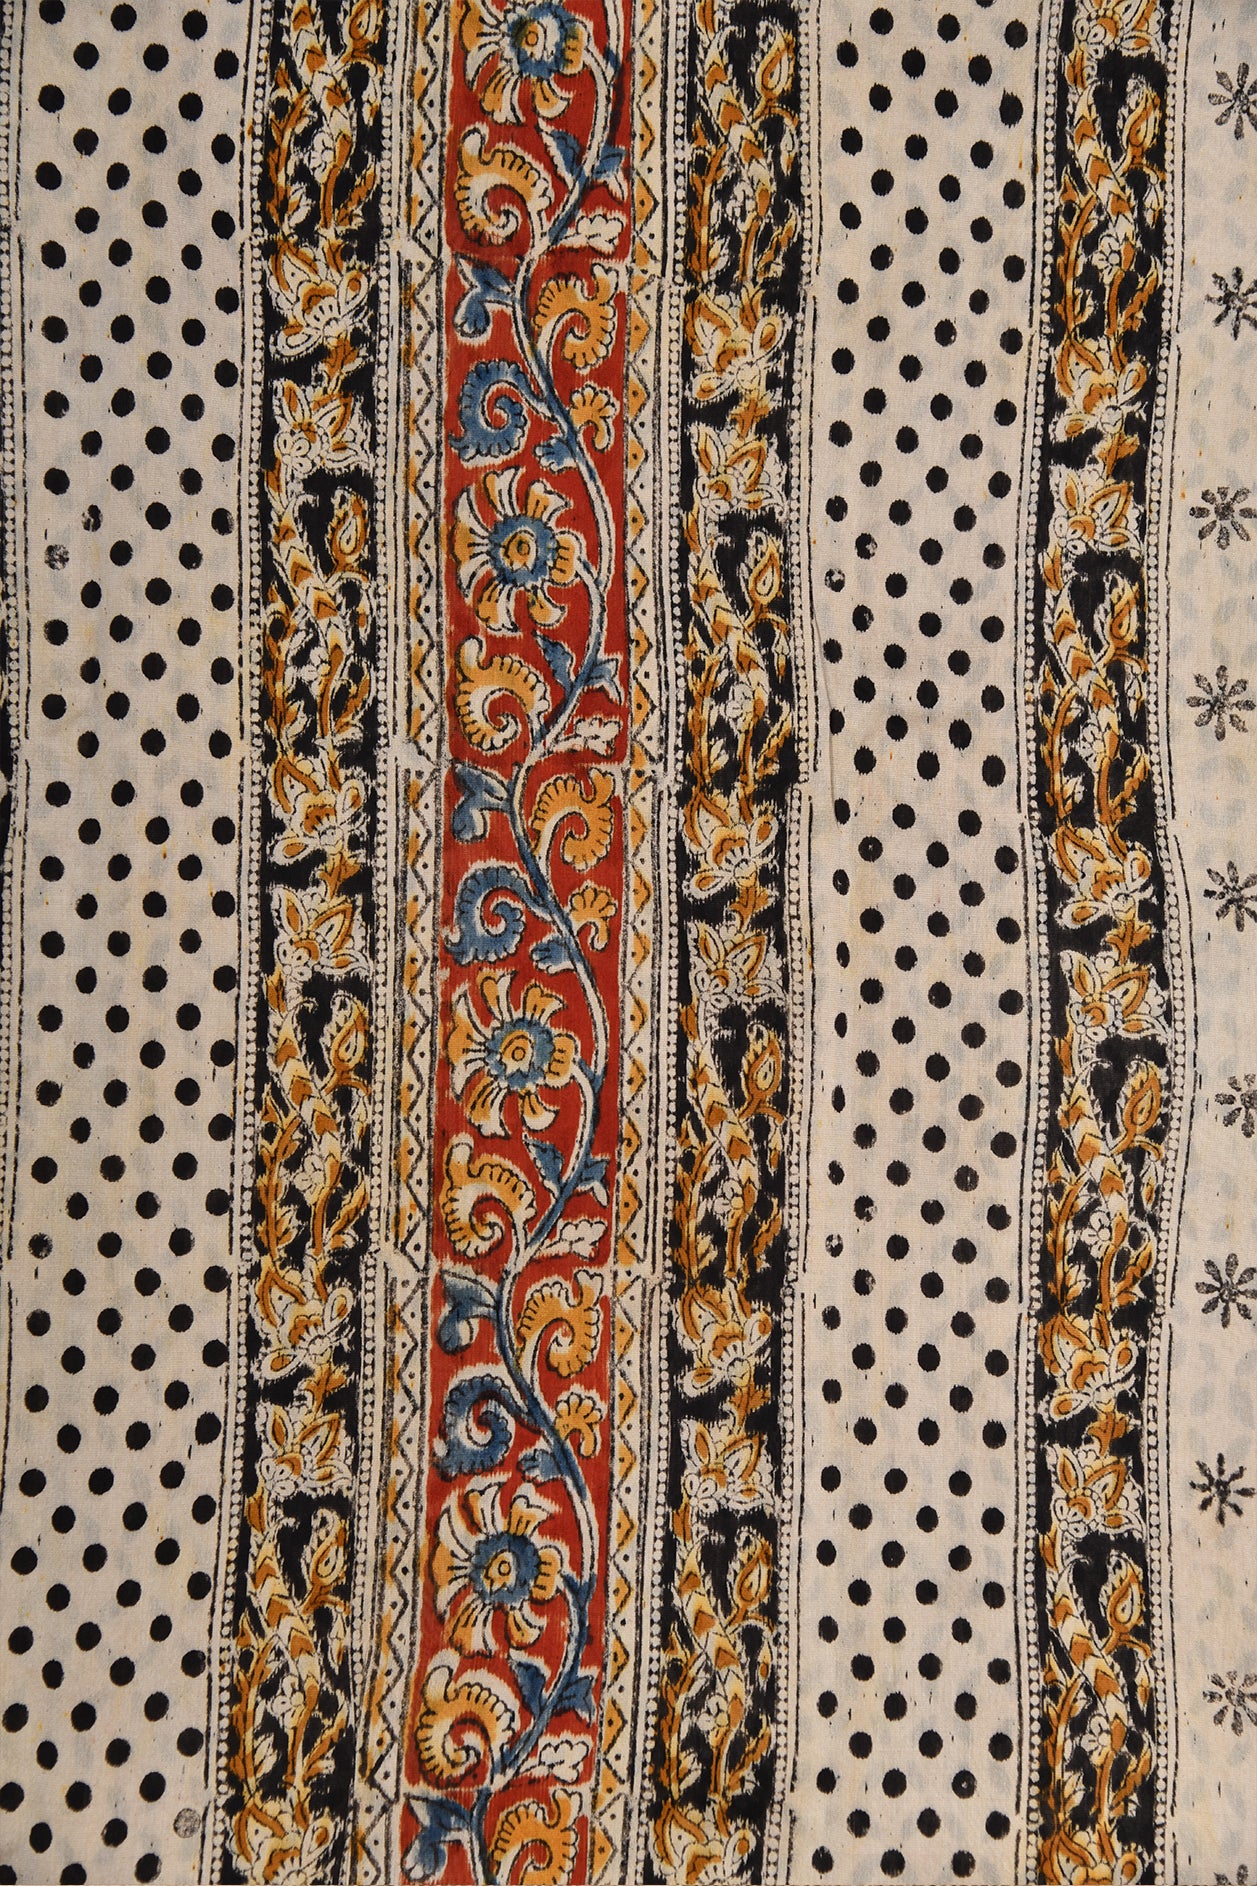 Polka Dots And Peacock Printed Ivory Kalamkari Cotton Saree